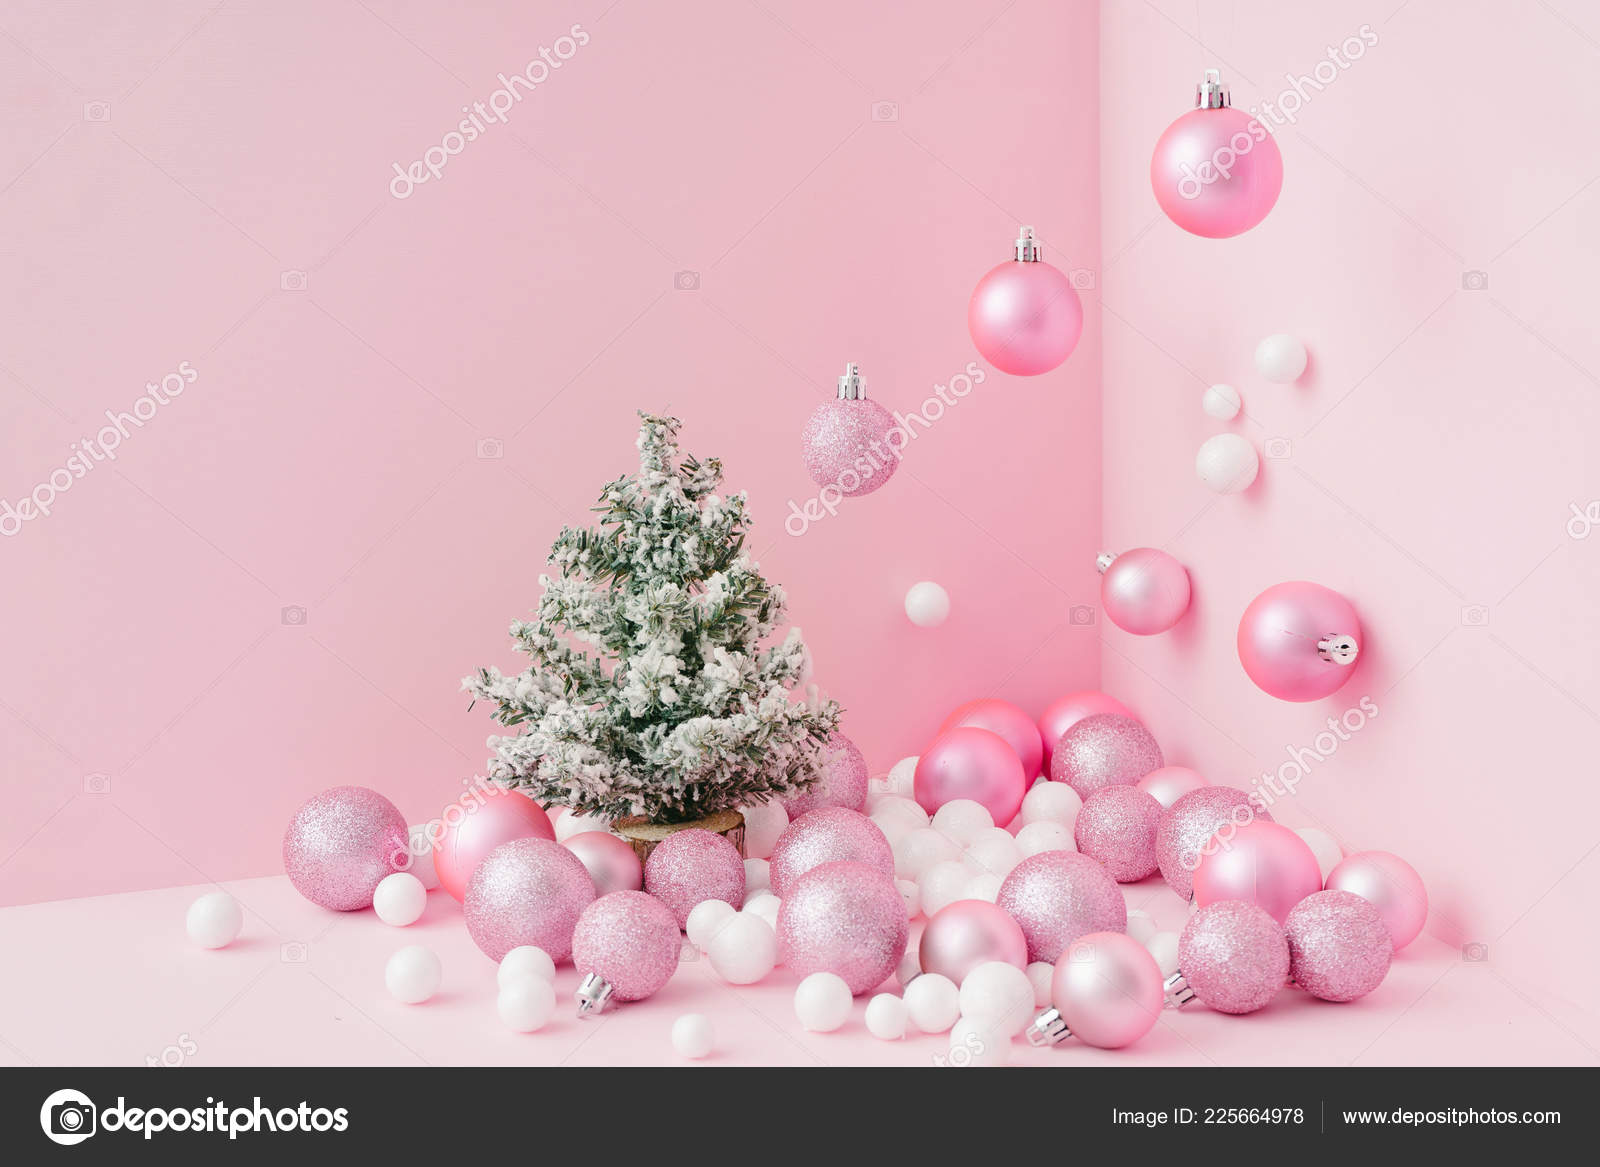 Hãy để hình nền Giáng sinh màu hồng đưa bạn vào không gian thần tiên, đầy mơ mộng. Với gam màu tươi sáng và đầy màu sắc, bạn sẽ có những khoảnh khắc đầy cảm xúc khi trải nghiệm bức tranh sống động này.